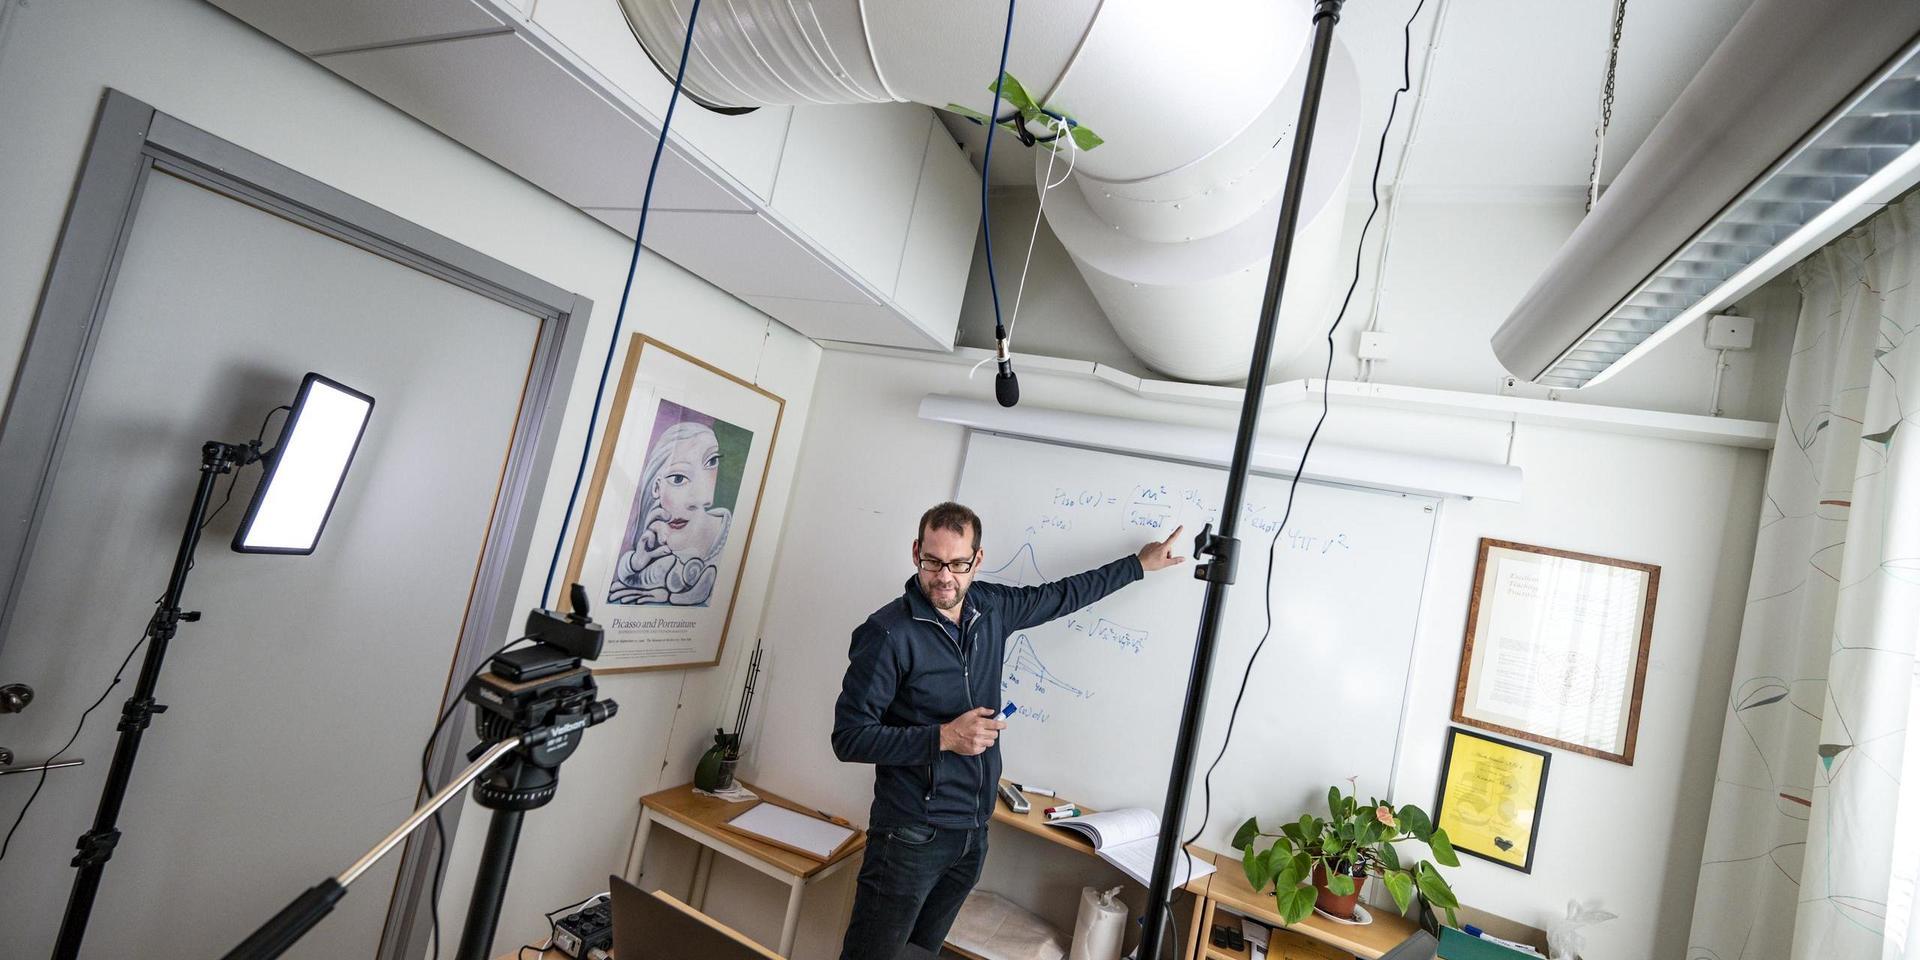 Universitetslektor Kristofer Modig har gjort om sitt arbetsrum på Kemicentrum i Lund till en liten studio. Han kan ha föreläsning för 100 studenter på en gång, men ser bara 18 av dem åt gången på små bilder på dataskärmen. 